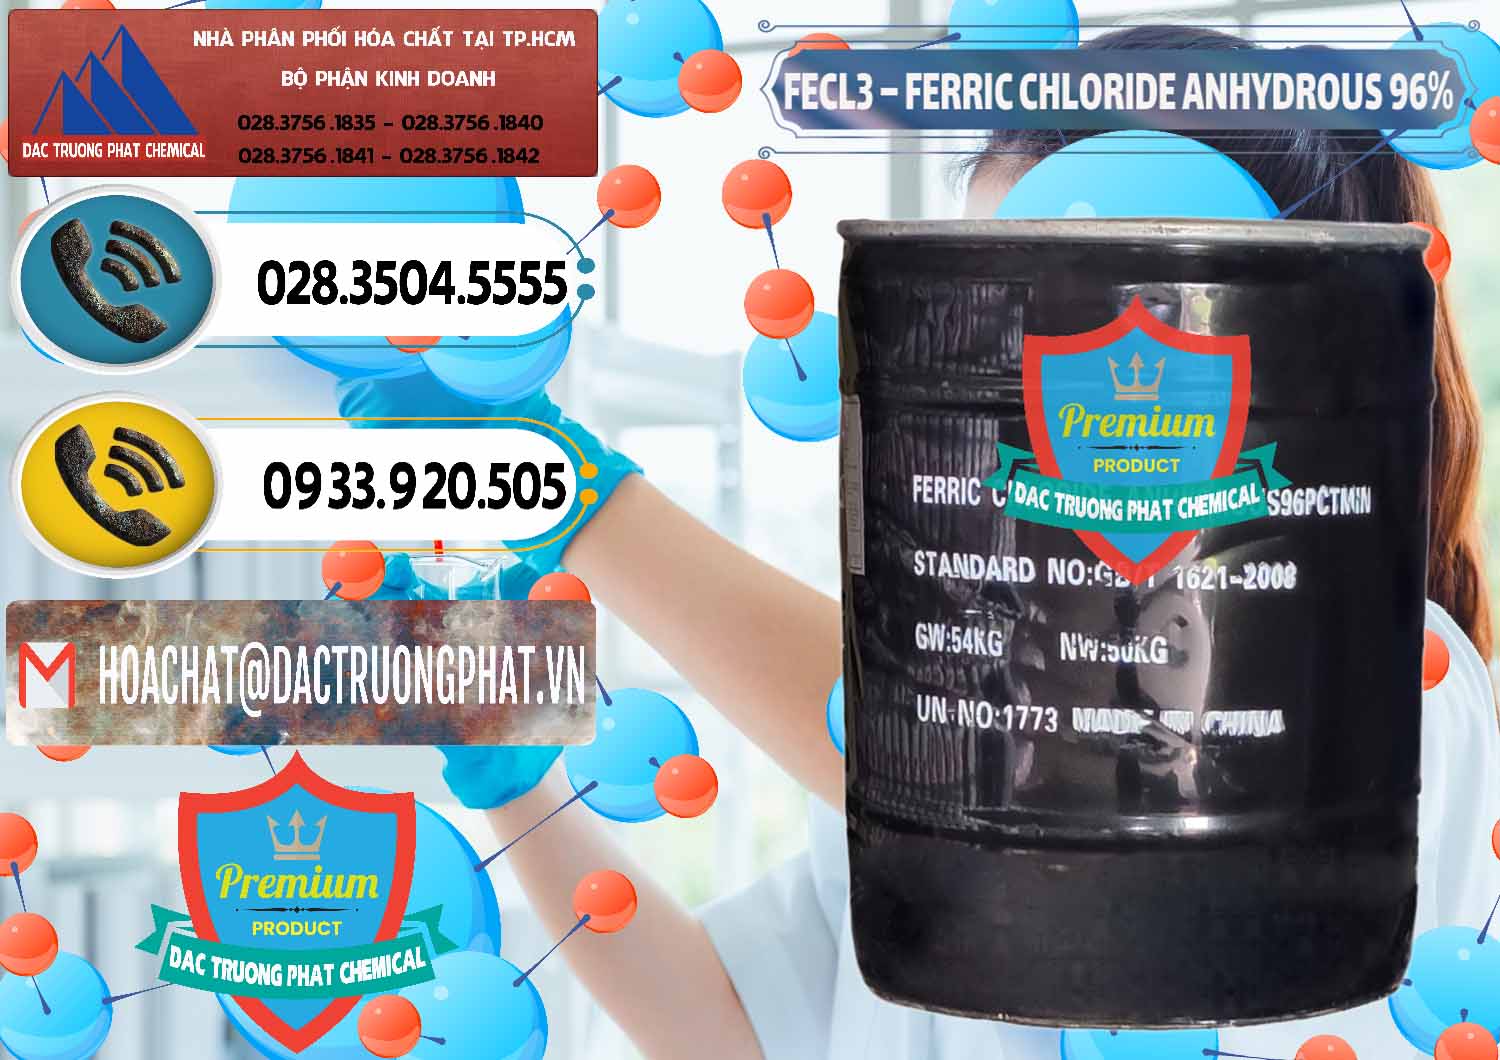 Nơi bán ( phân phối ) FECL3 – Ferric Chloride Anhydrous 96% Trung Quốc China - 0065 - Công ty kinh doanh và cung cấp hóa chất tại TP.HCM - hoachatdetnhuom.vn